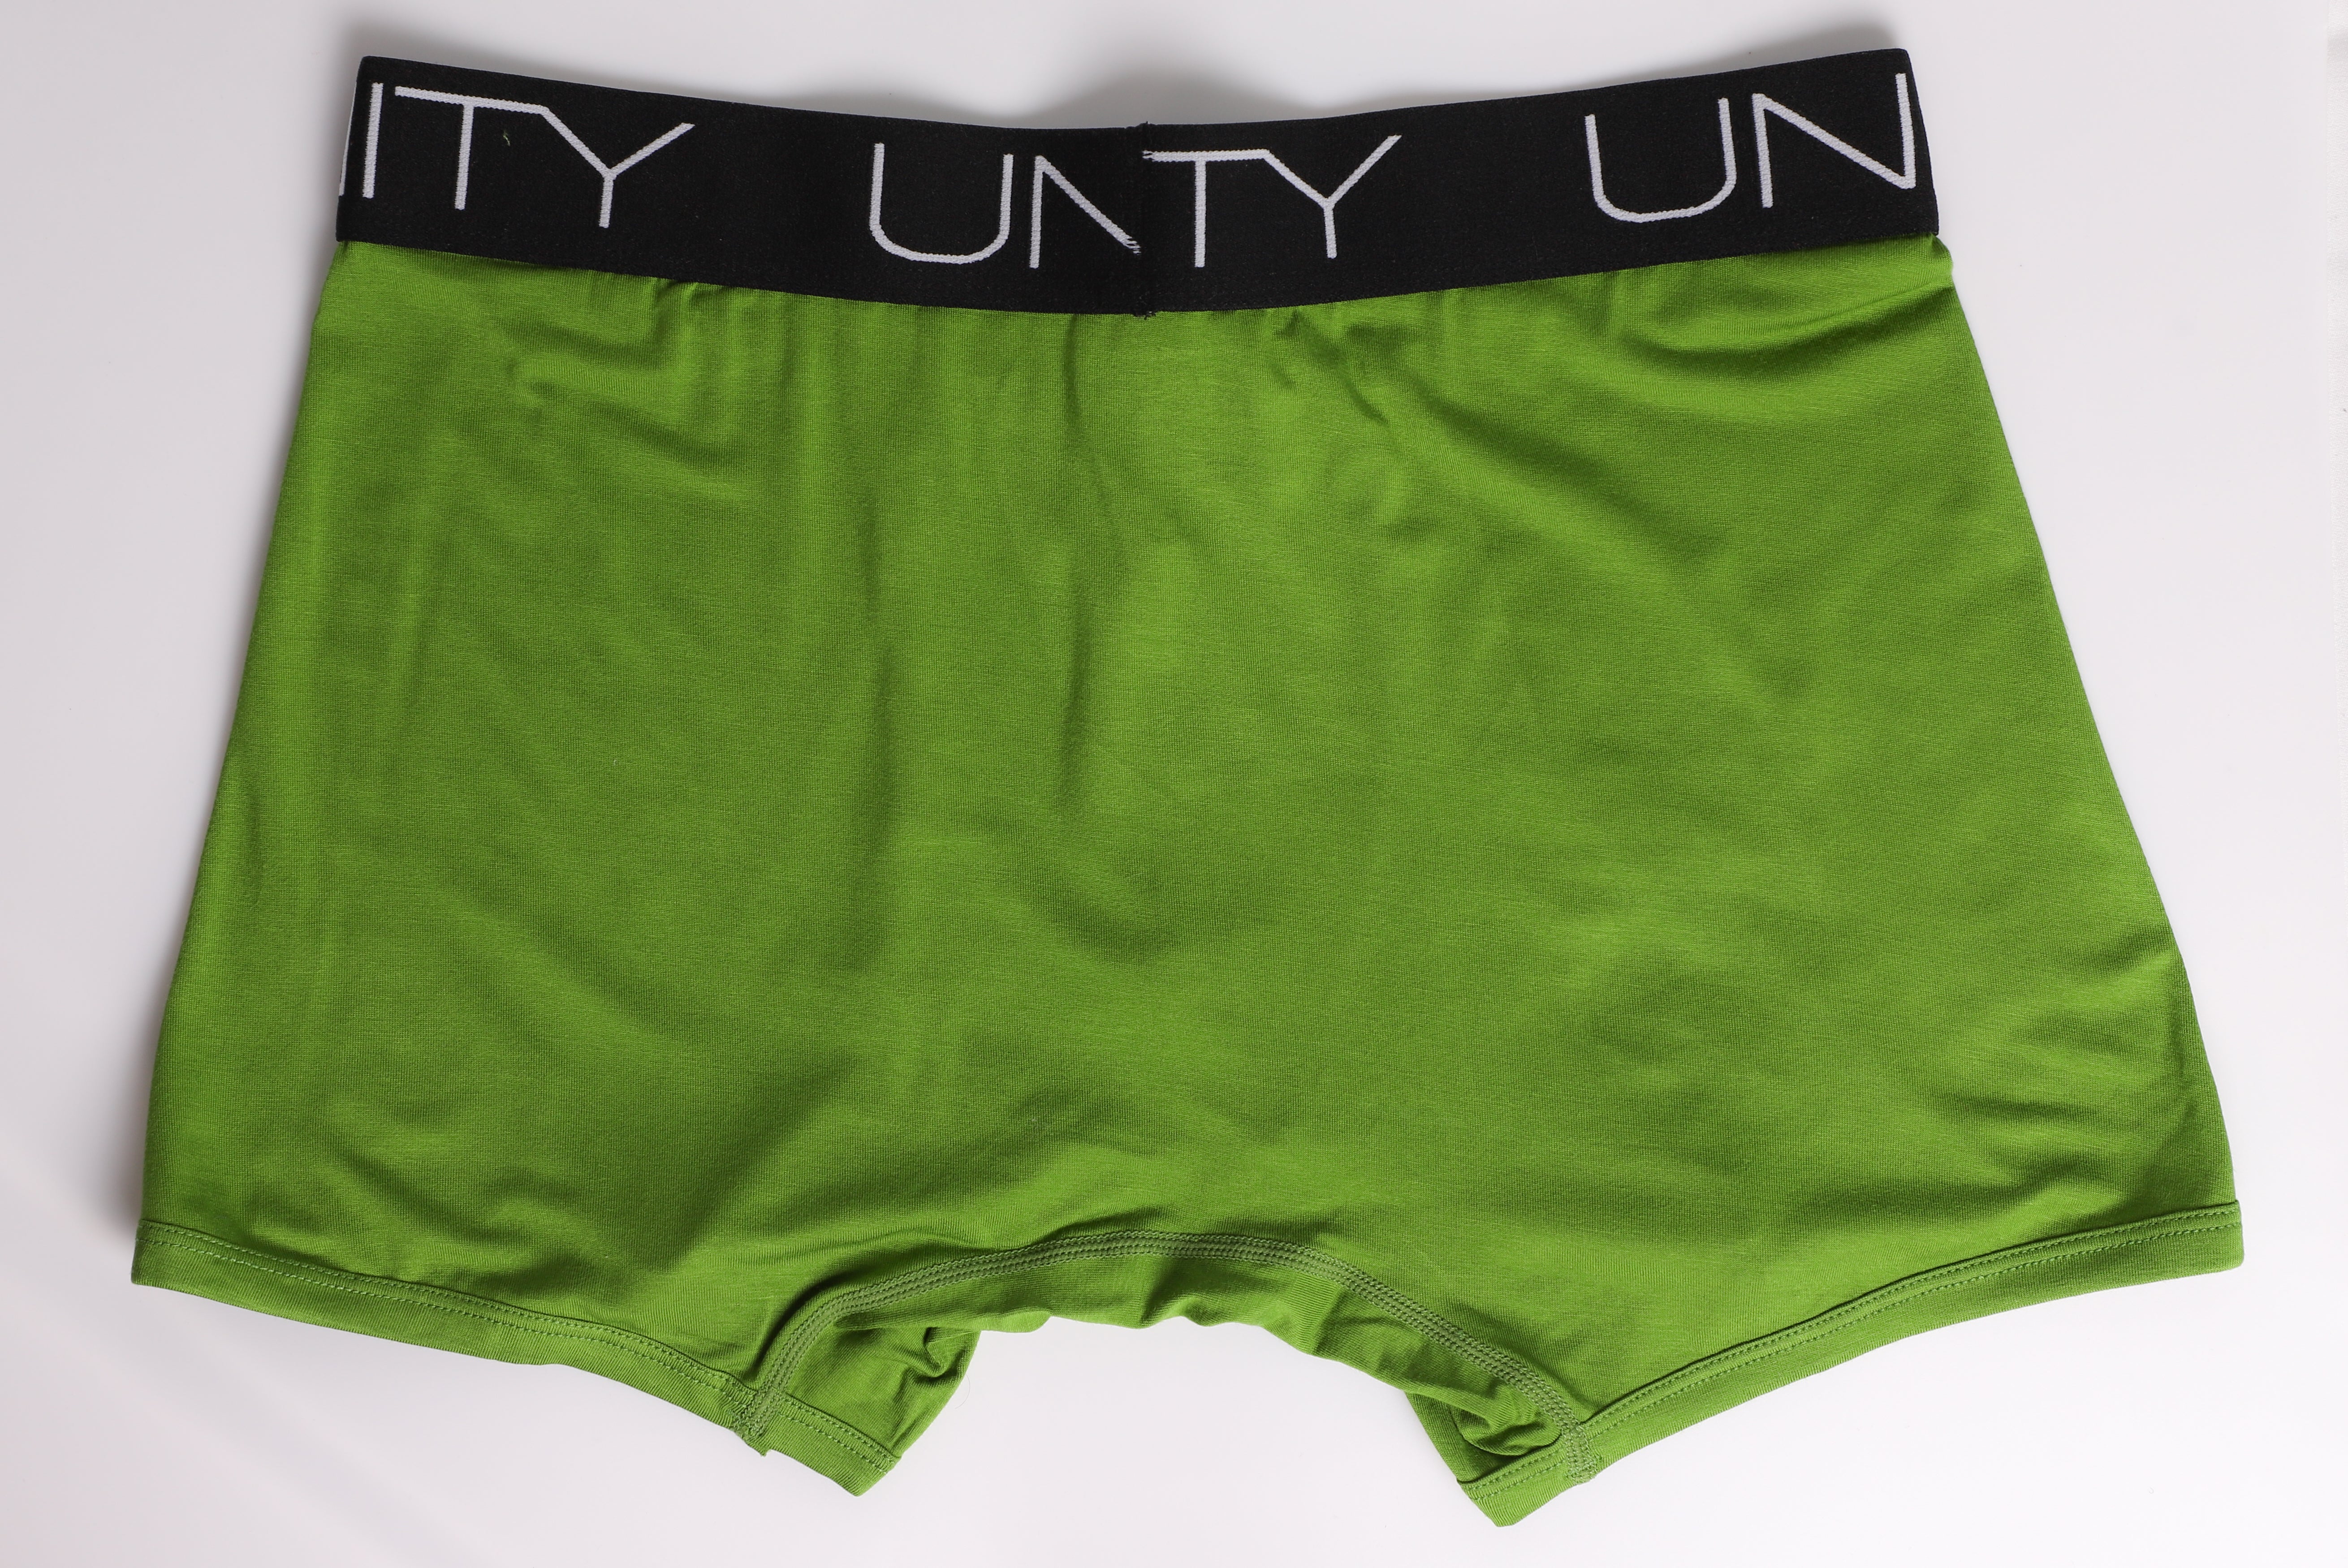 most comfortable underwear for men, men's bamboo underwear, eco-friendly underwear, men's underwear